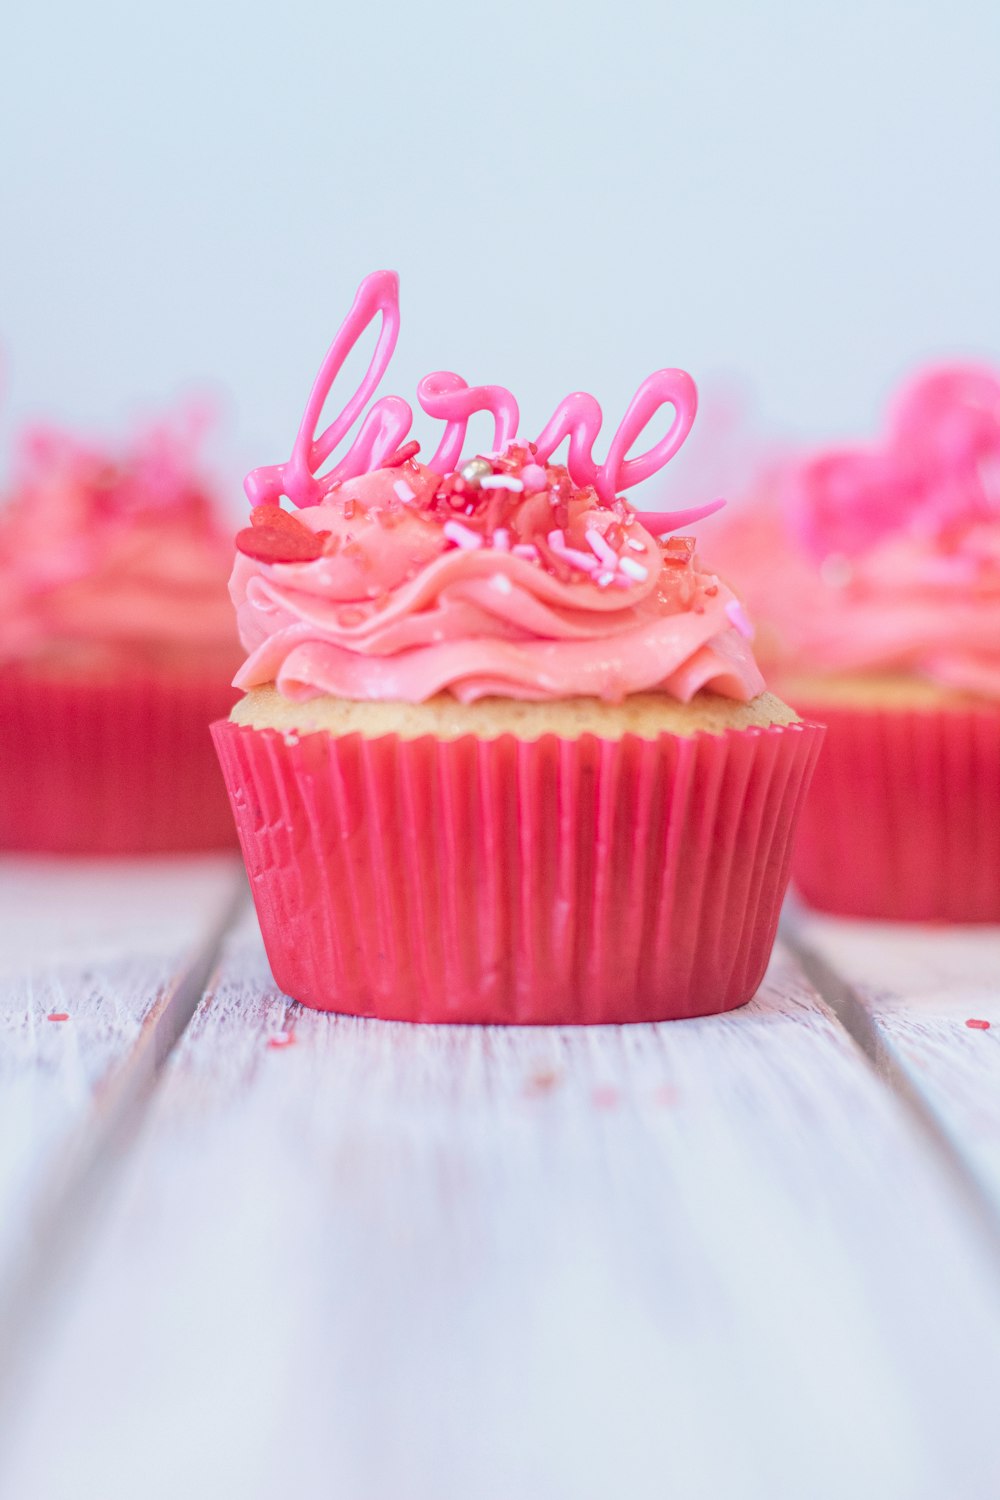 위에 분홍색 장식이 있는 분홍색 컵케이크